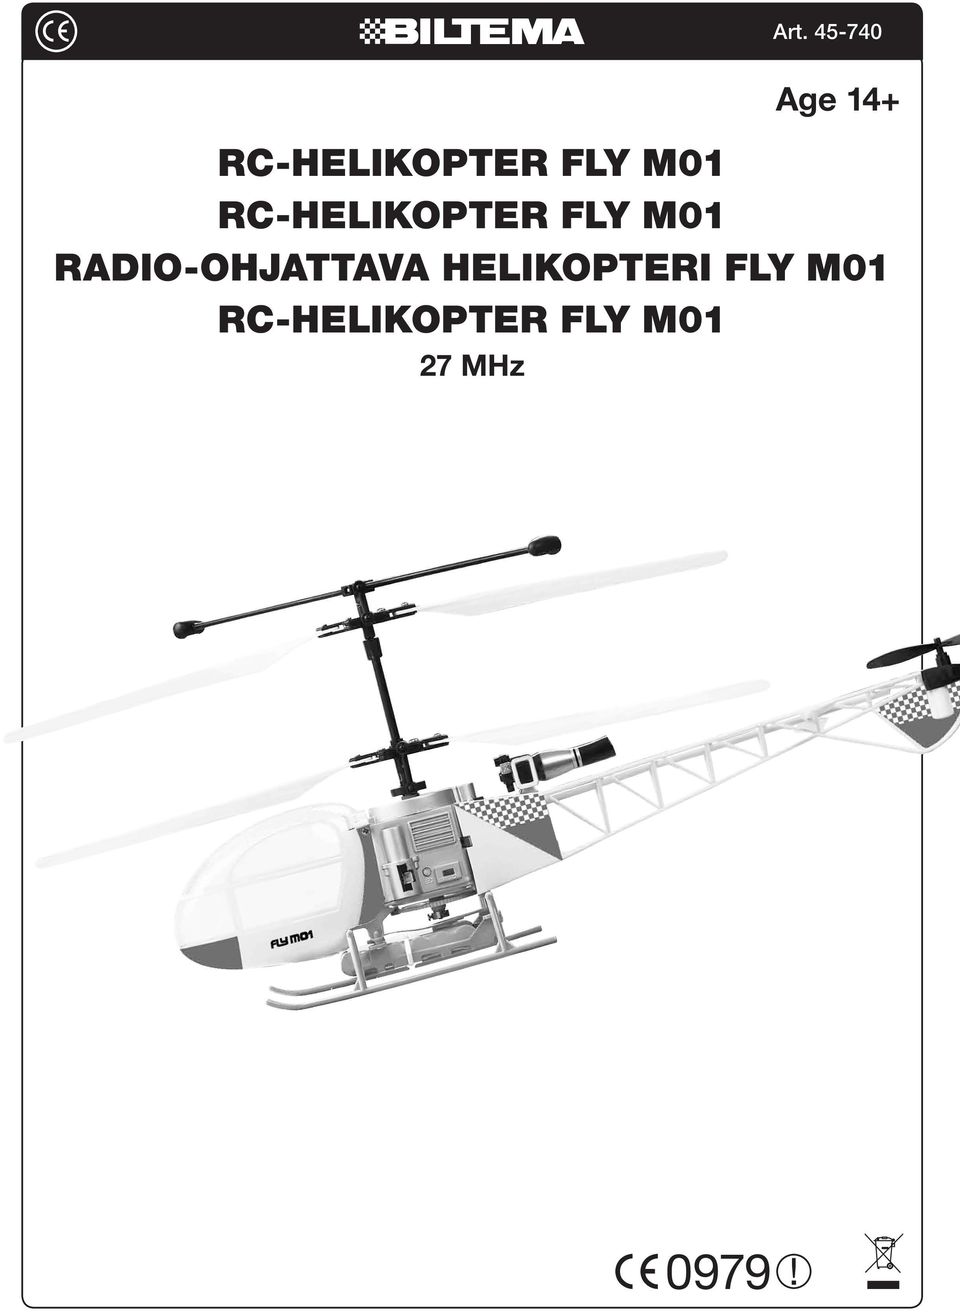 Radio-ohjattava helikopteri